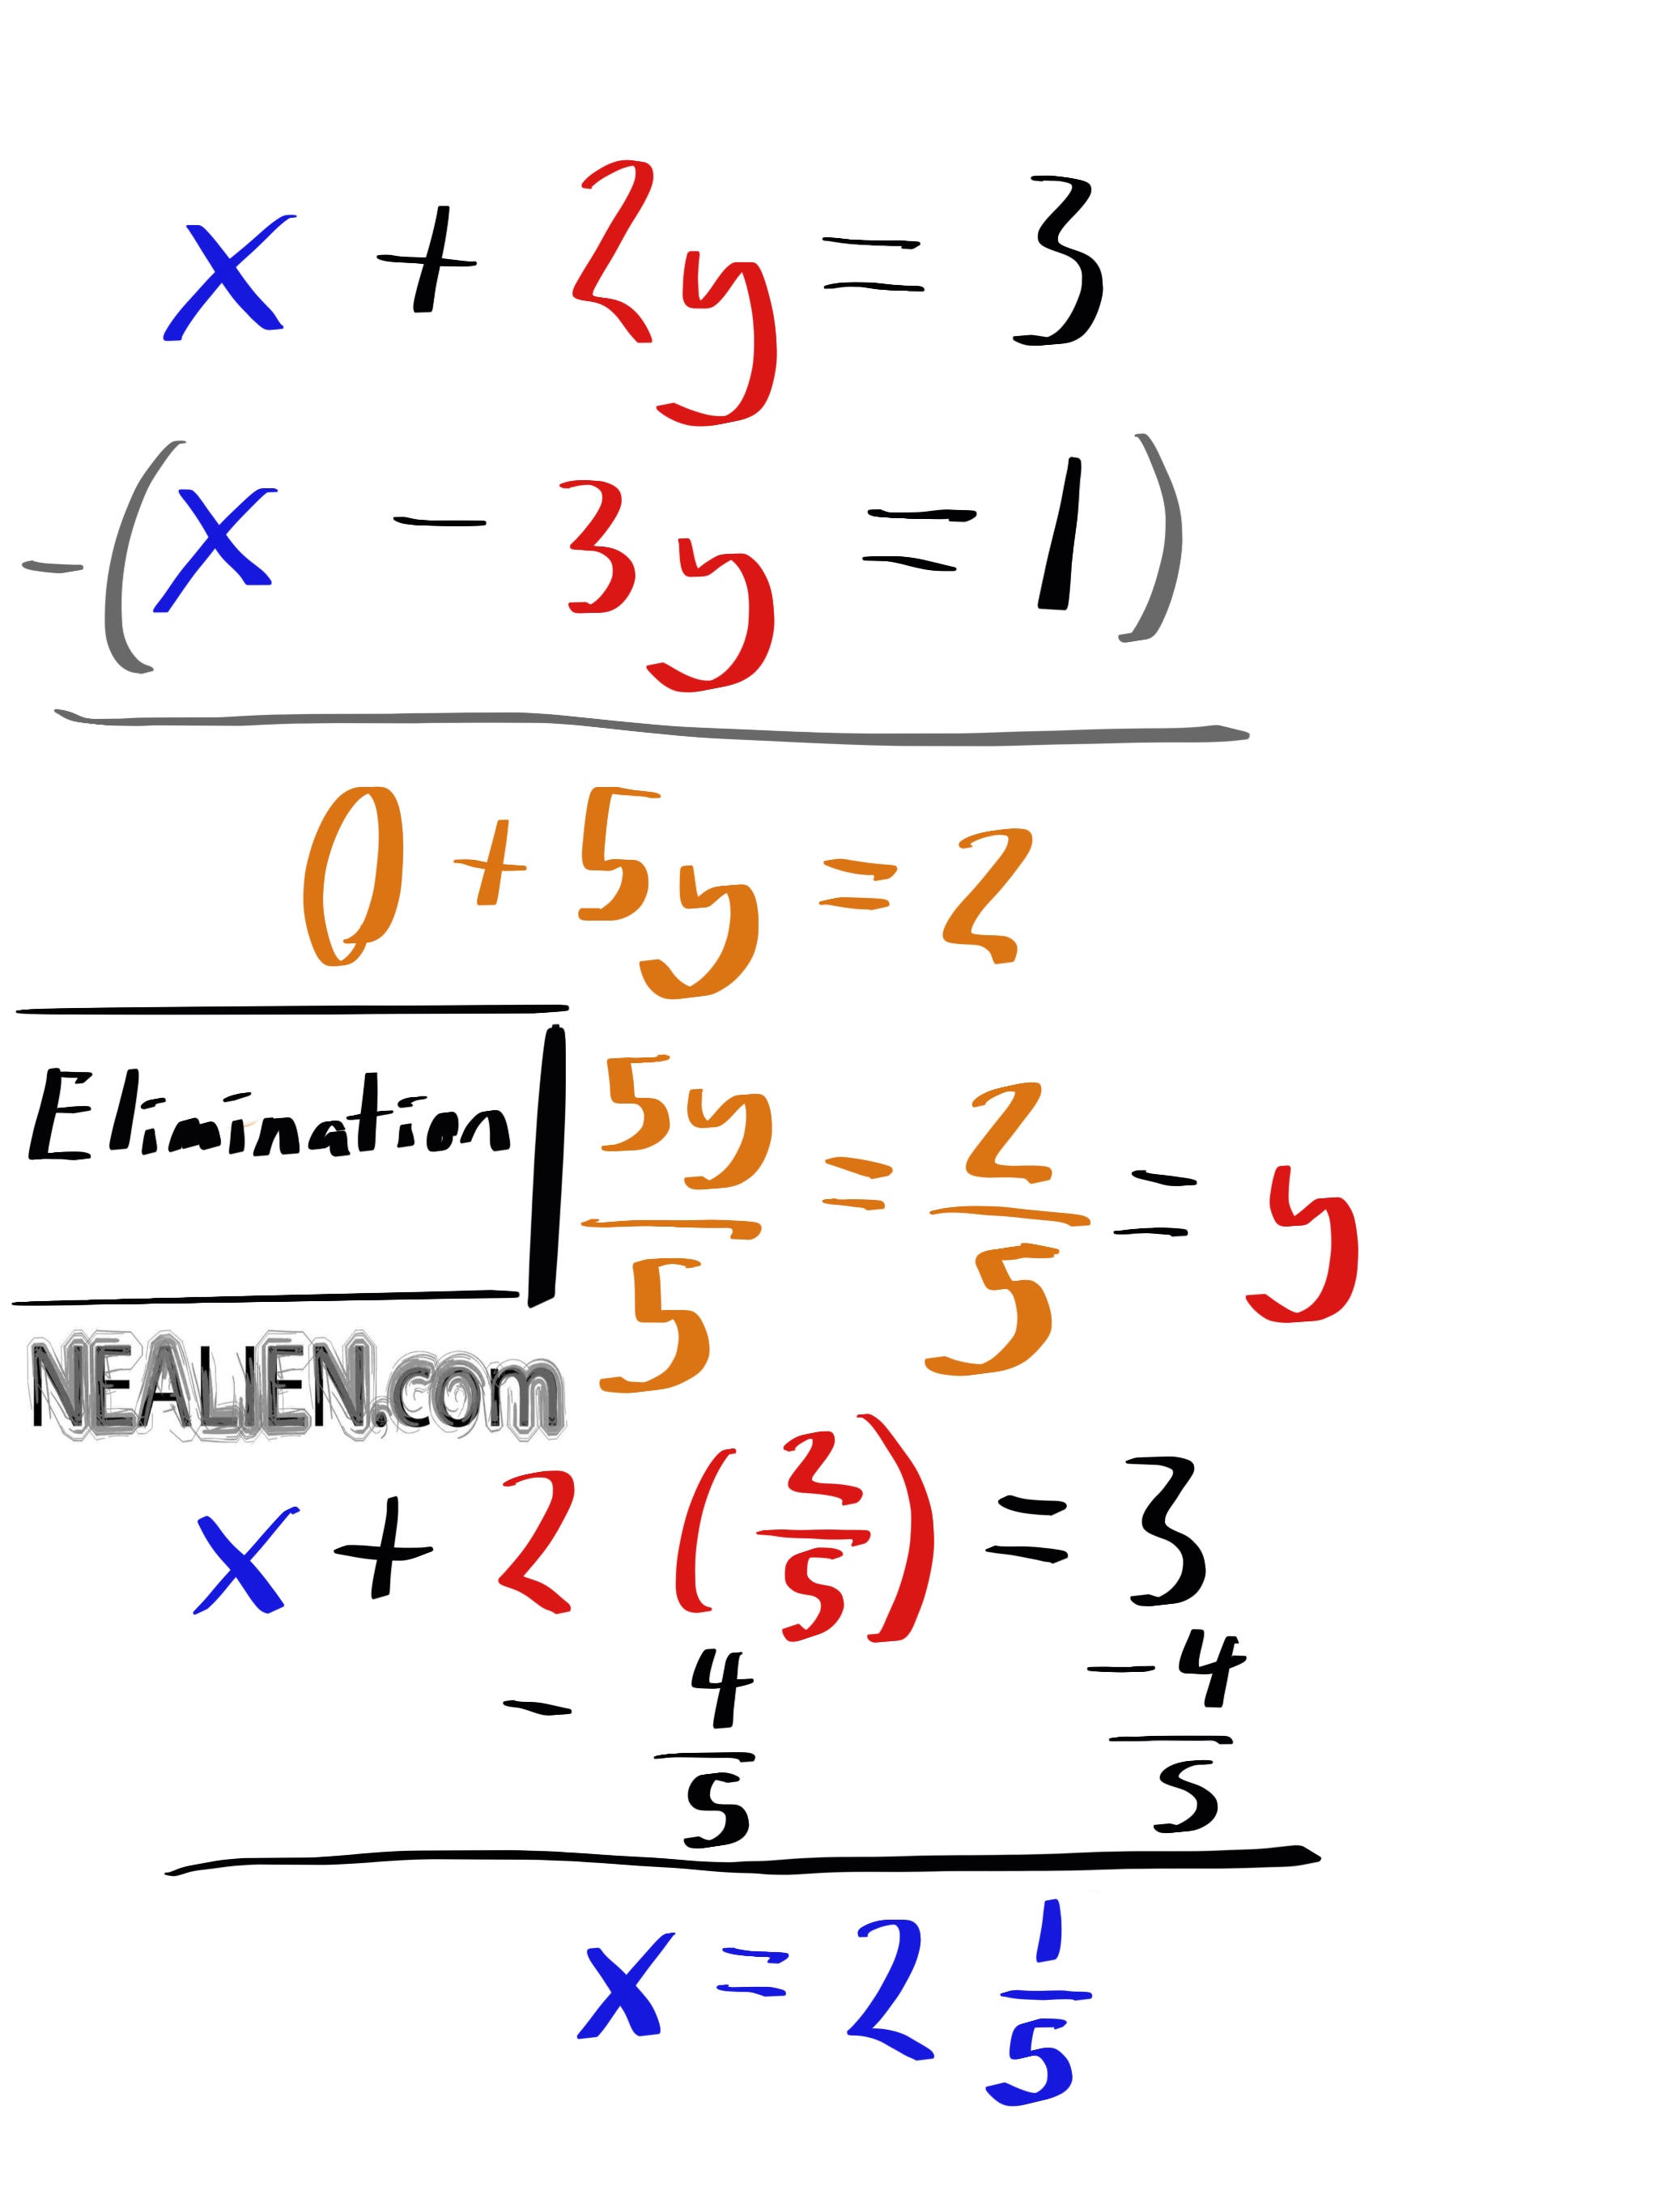 Elimination Method Without Multiplication Worksheet Answers